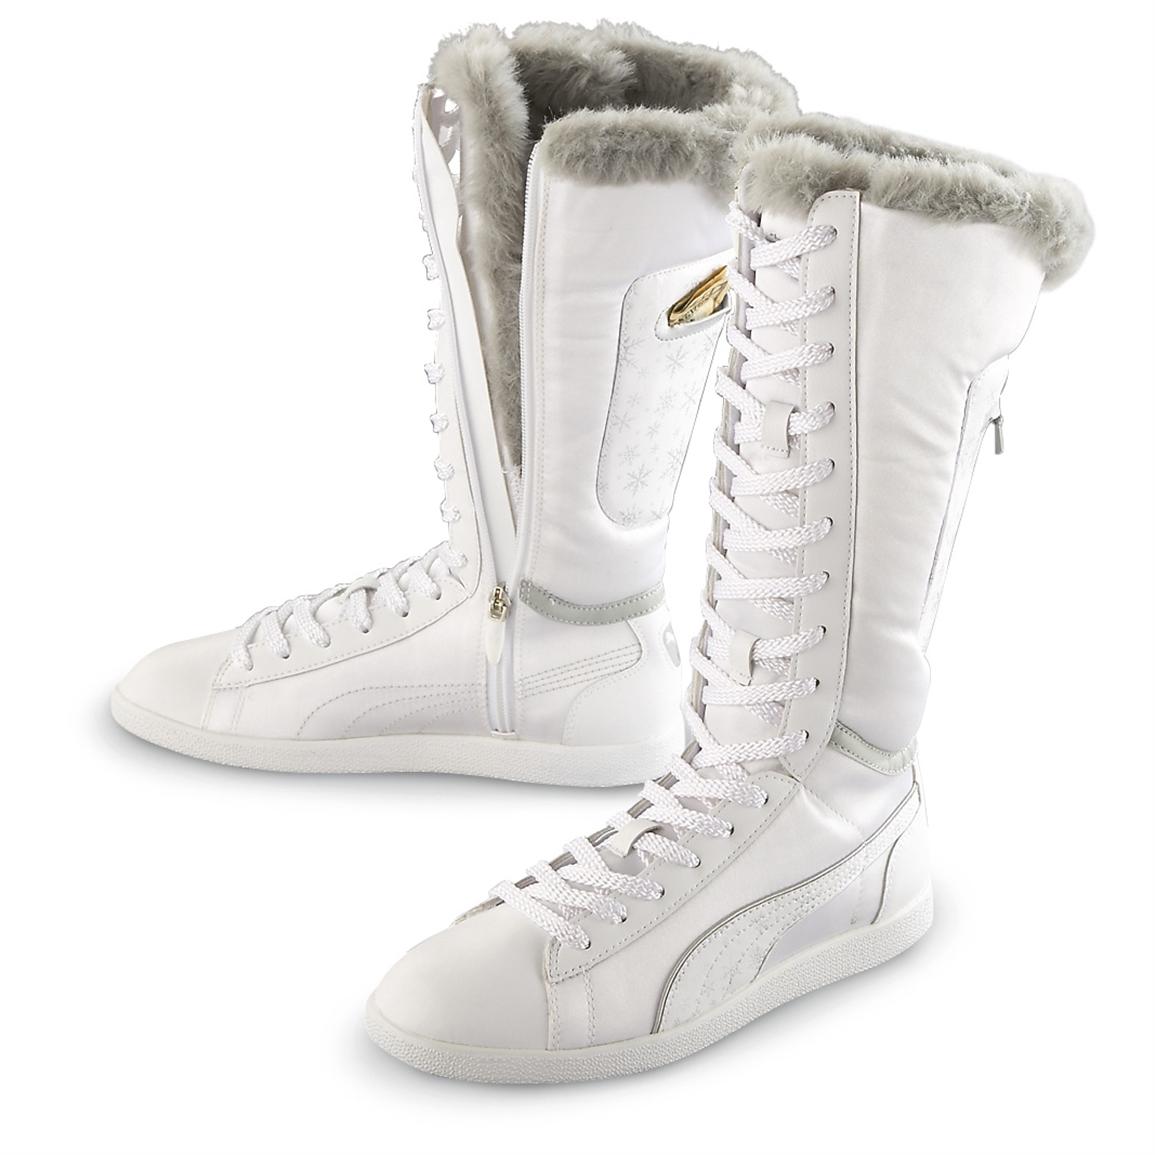 puma boots white